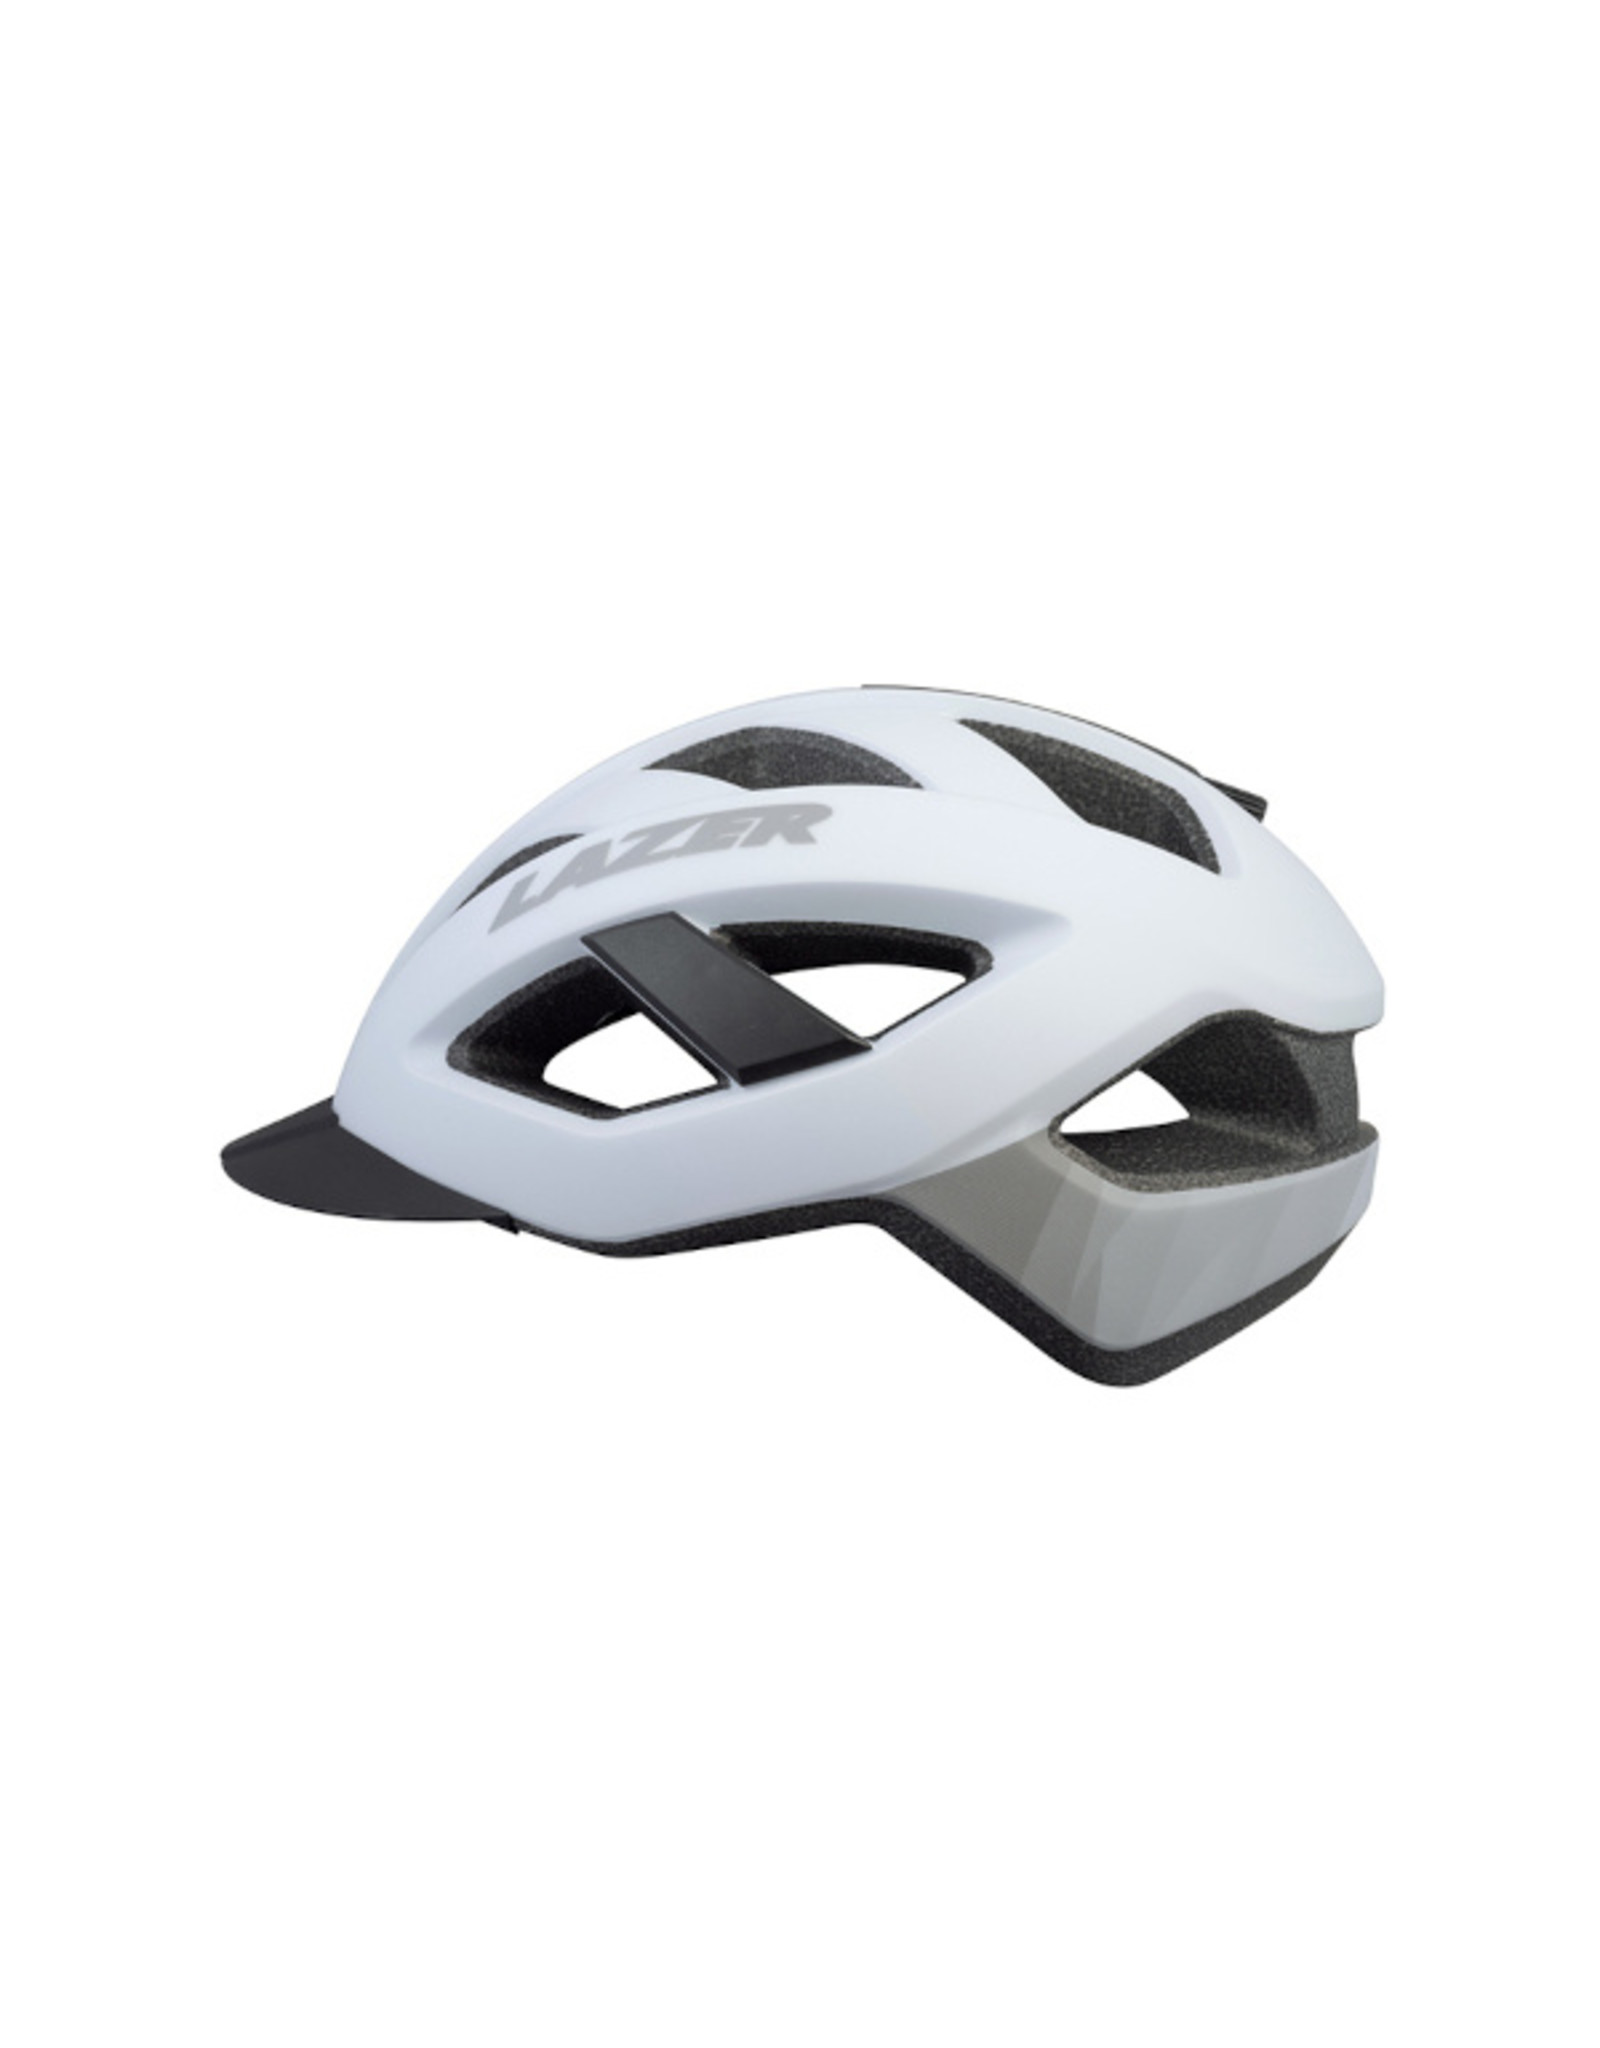 Helmet White Small (52-56 cm) Cameleon Lazer